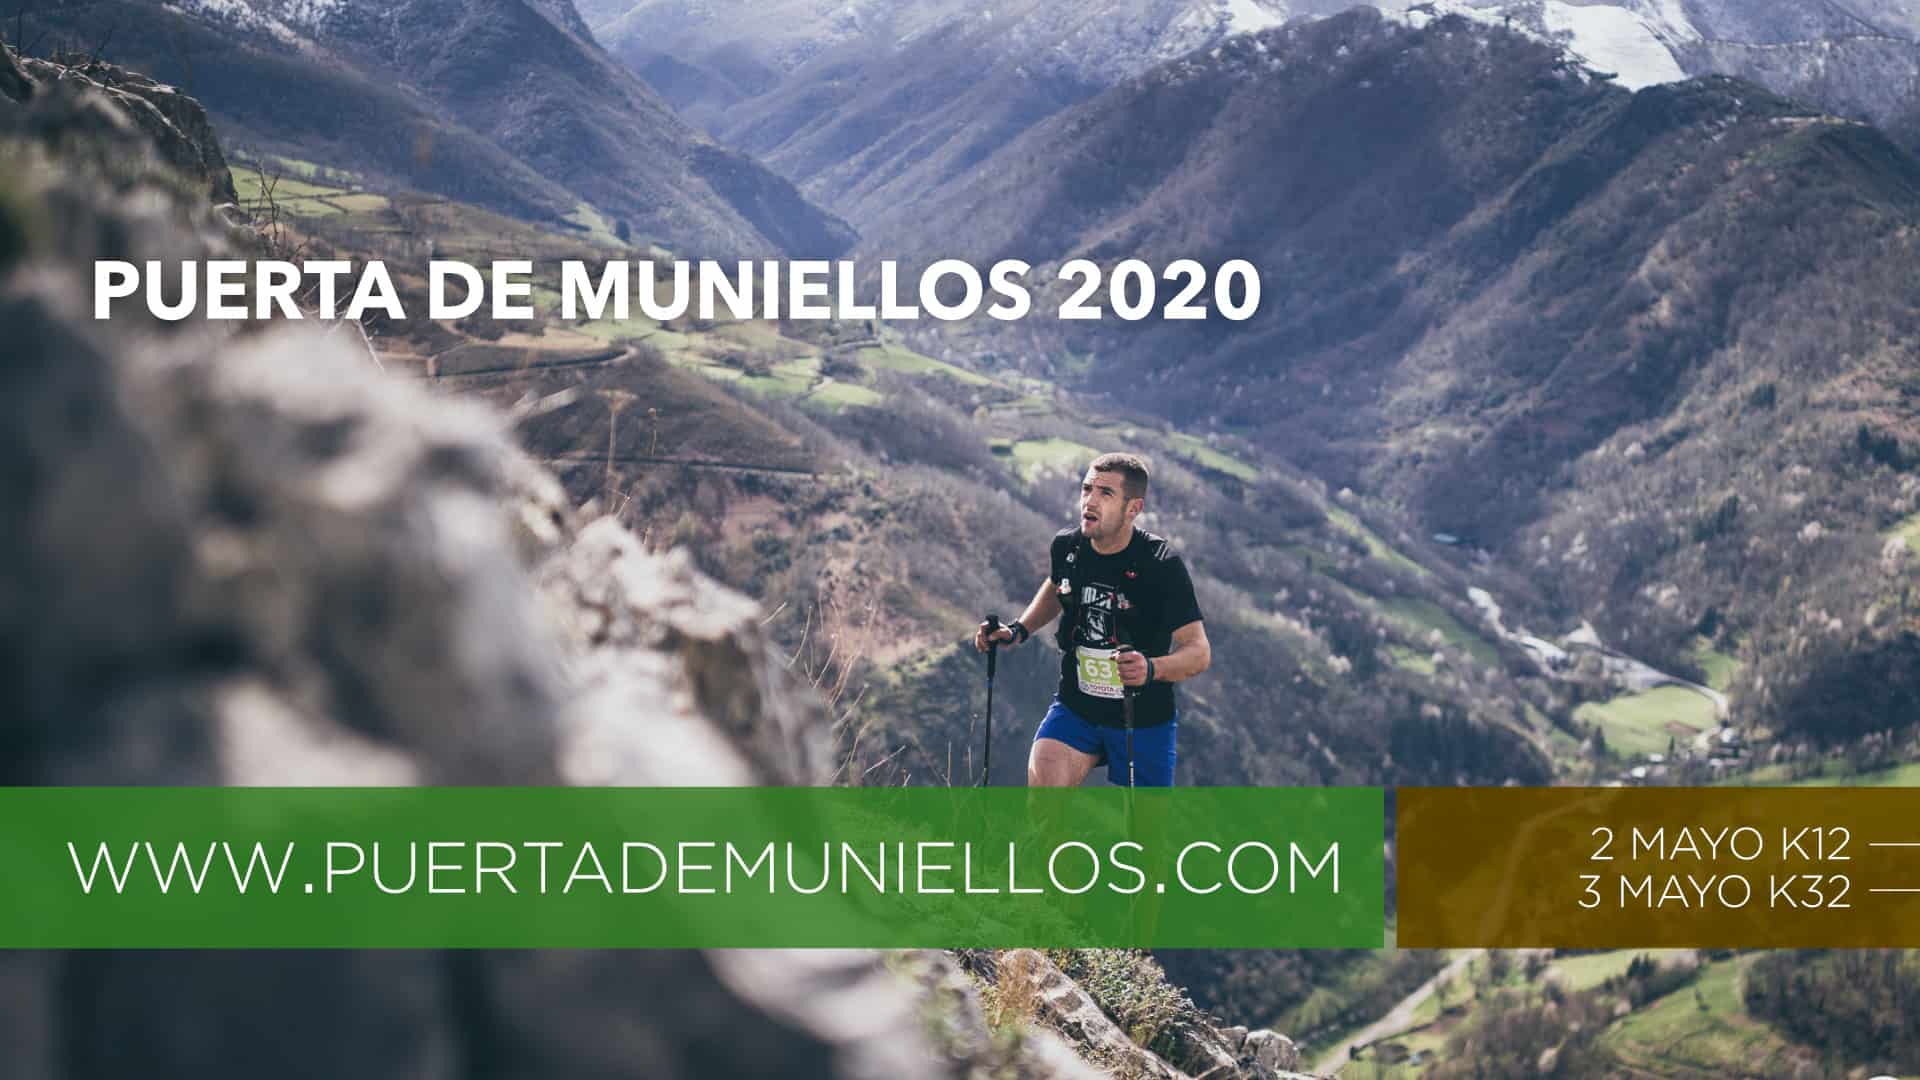 Puerta de Muniellos 2020